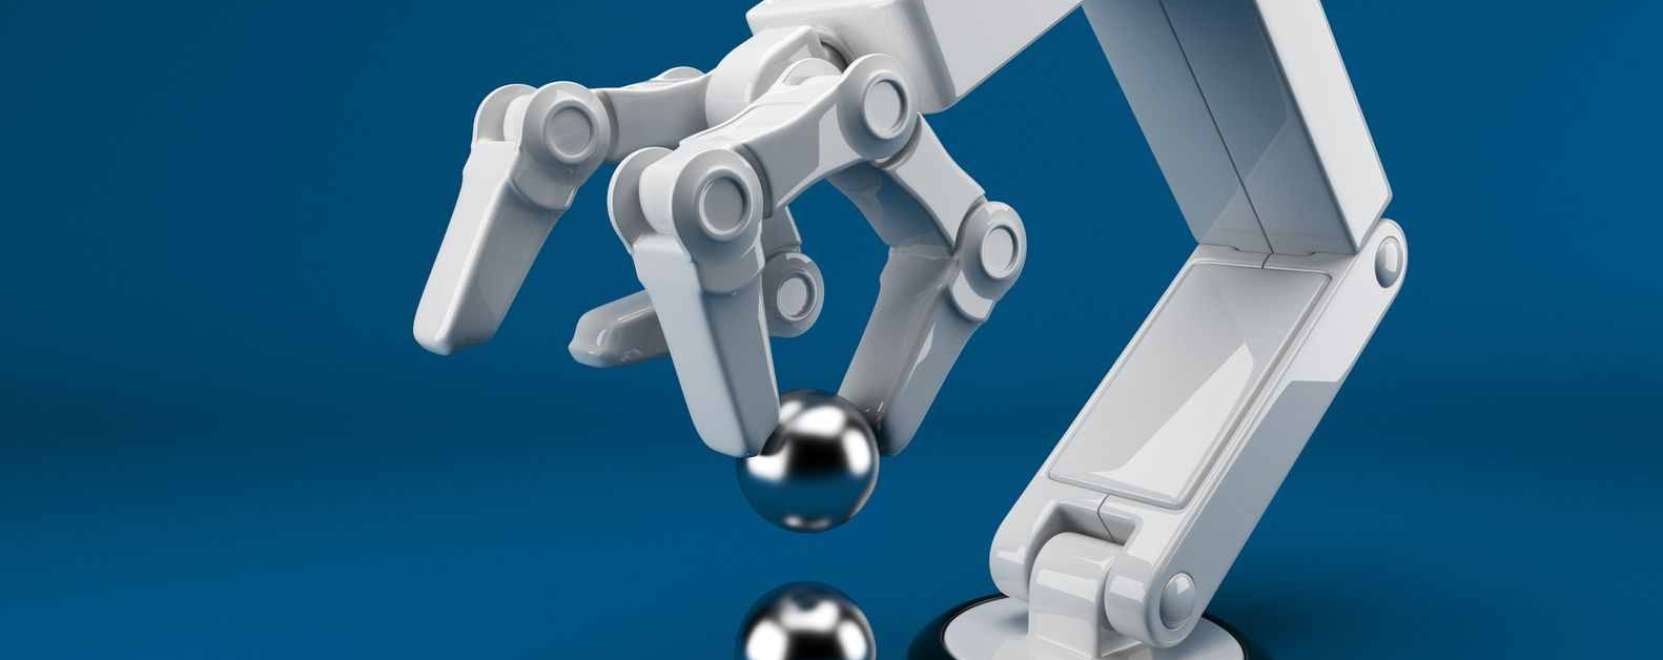 Növekszik az ipari robotok iránti kereslet 